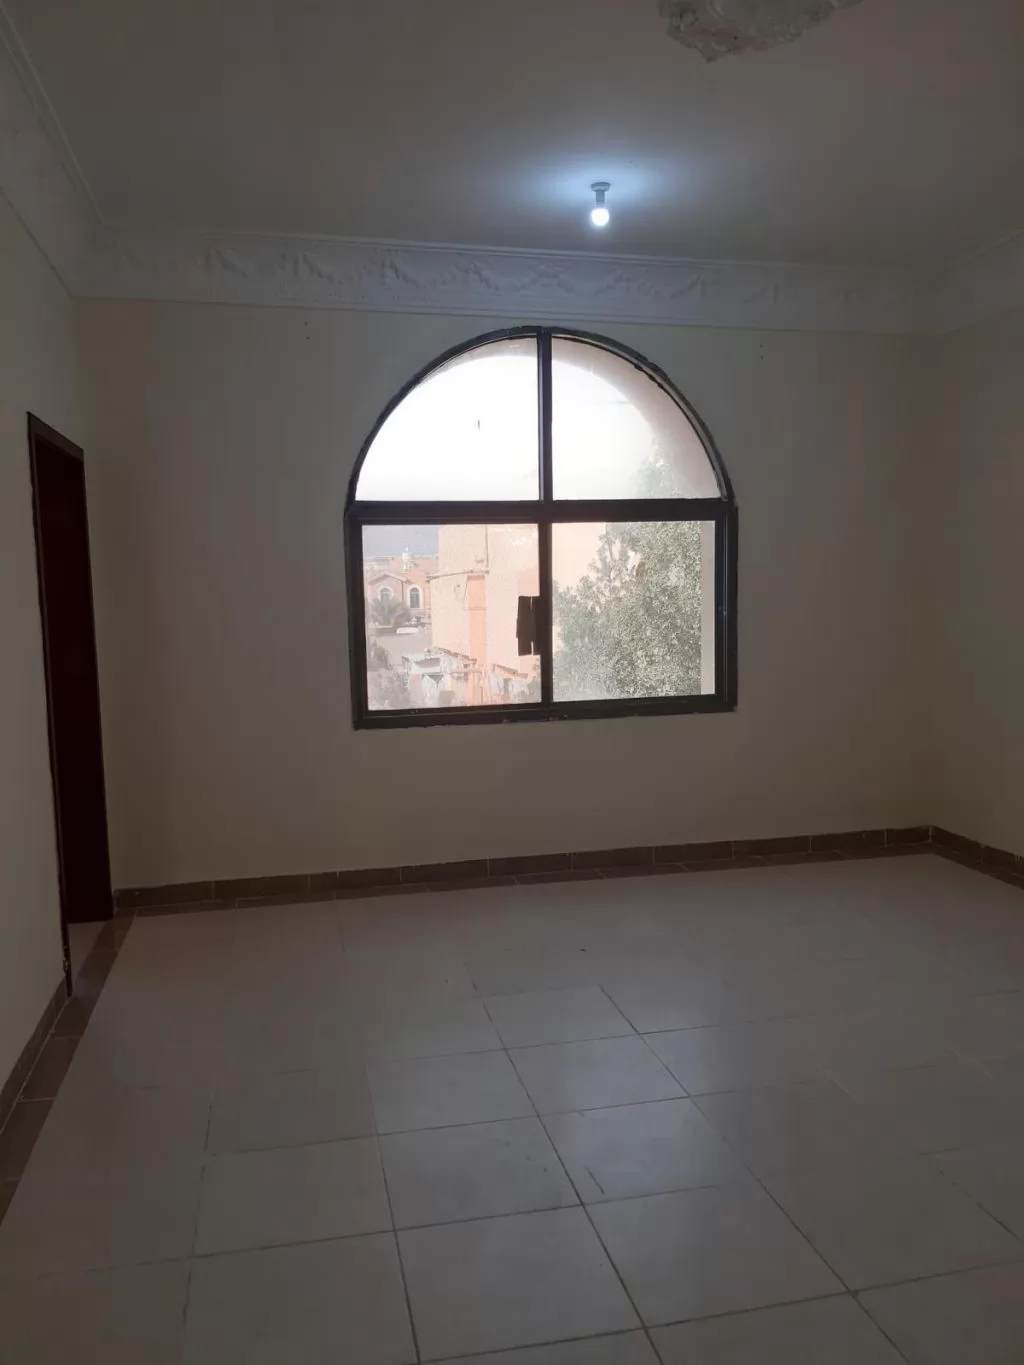 سكني عقار جاهز 2 غرف  غير مفروش شقة  للإيجار في الدوحة #14165 - 1  صورة 